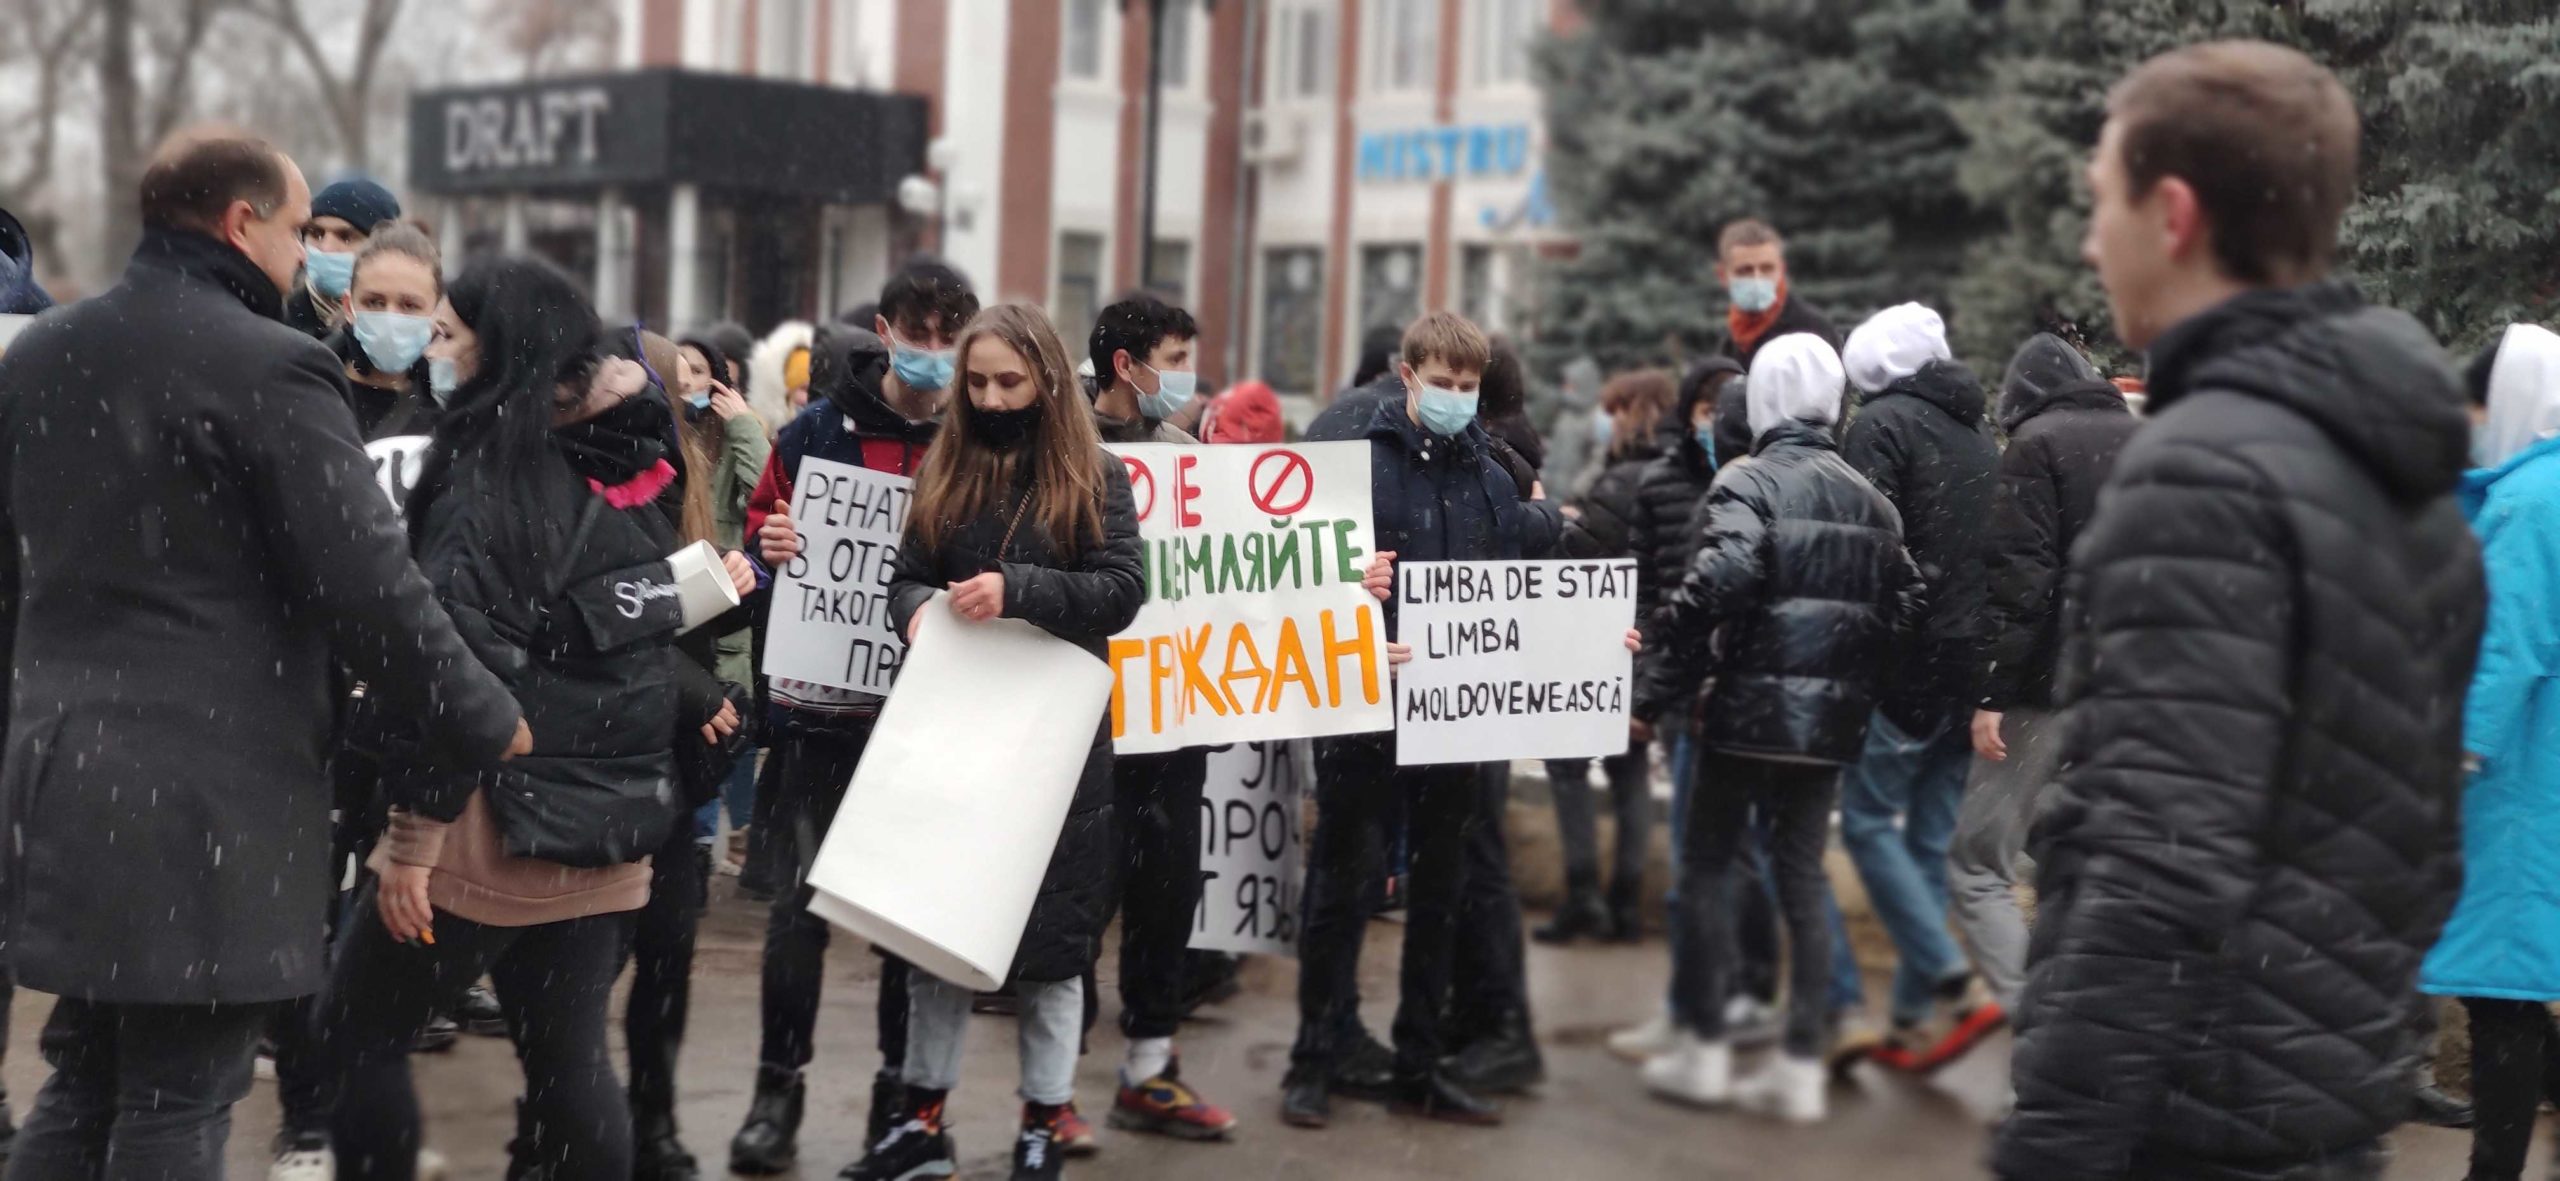 „Aduceți înapoi limba rusă”. Protest în sprijinul limbii ruse la Bălți (LIVE NM)